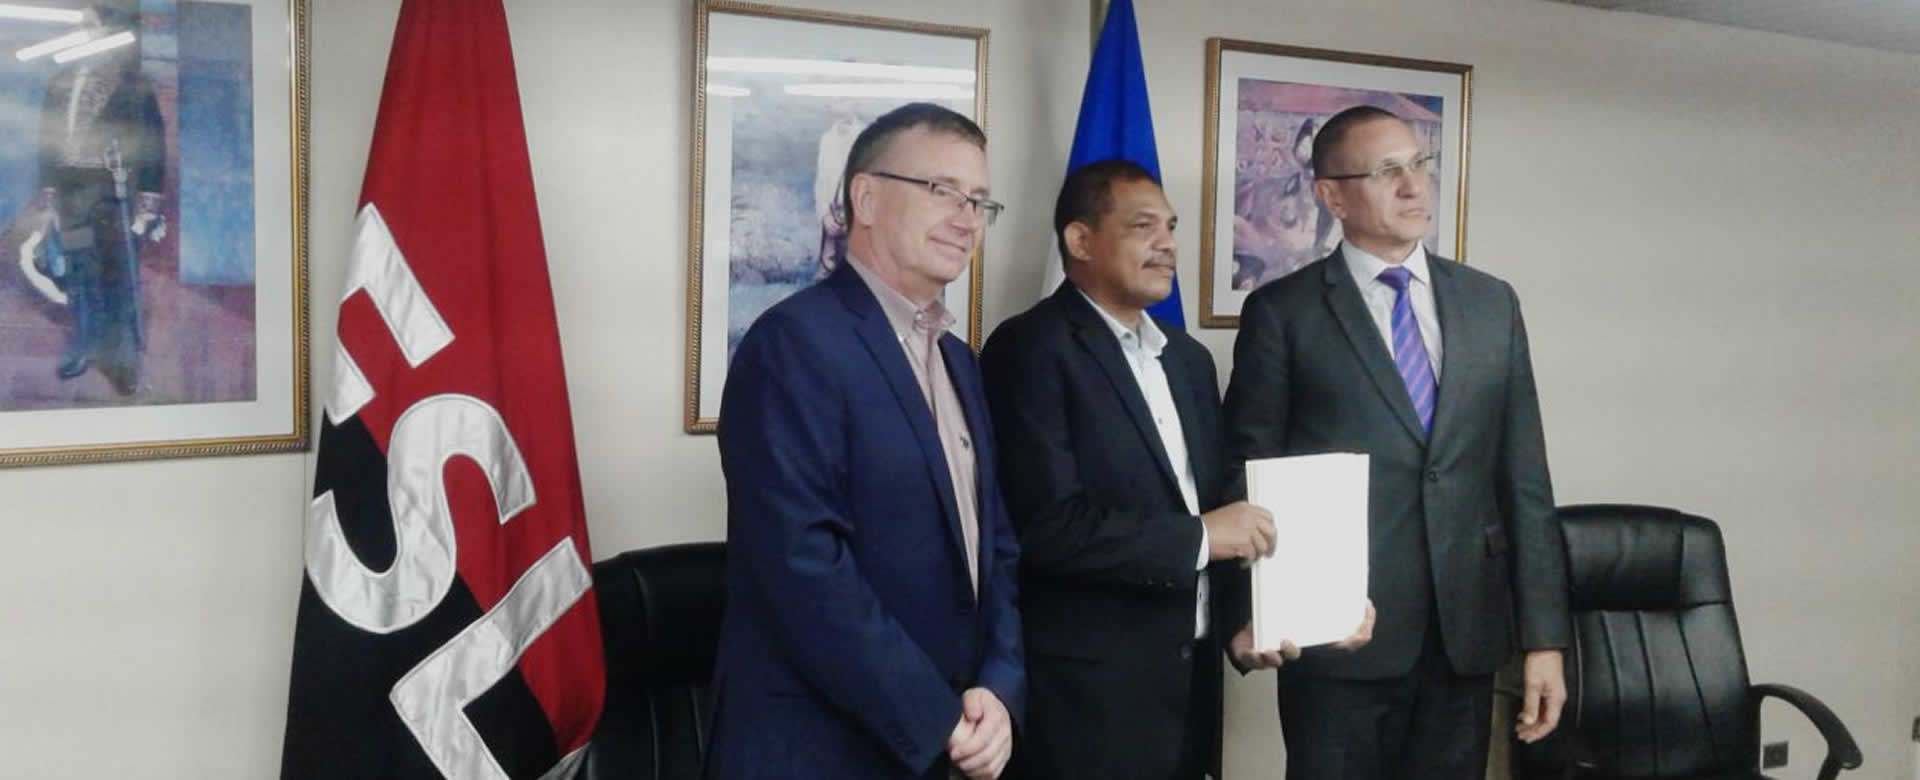 Nicaragua recibe fondo económico de Unión Europea para comercio exterior